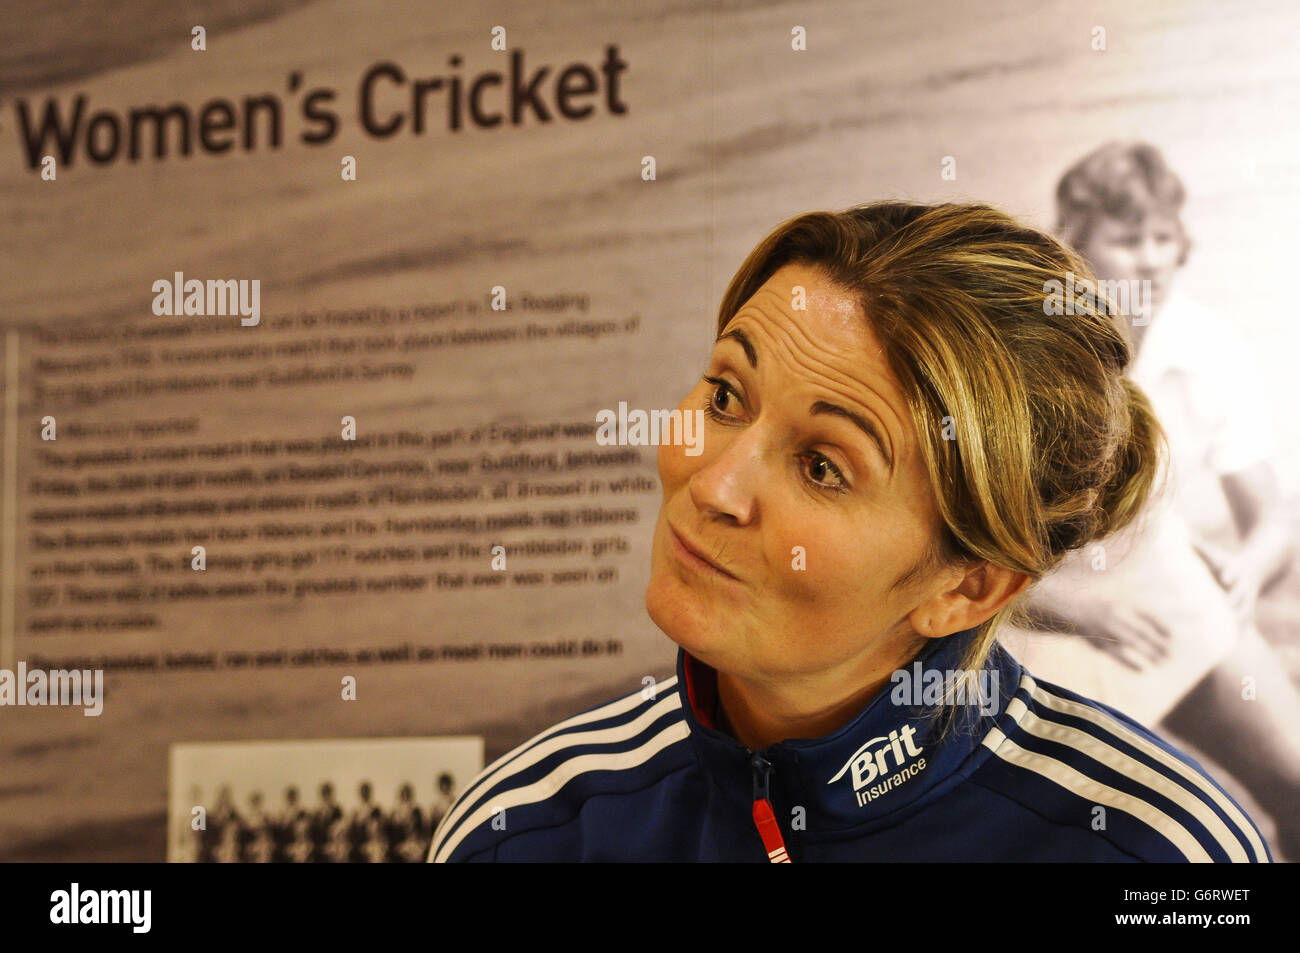 England Frauen-Team-Kapitän Charlotte Edwards während einer Fotozelle auf dem County Ground, Taunton, Somerset. Stockfoto